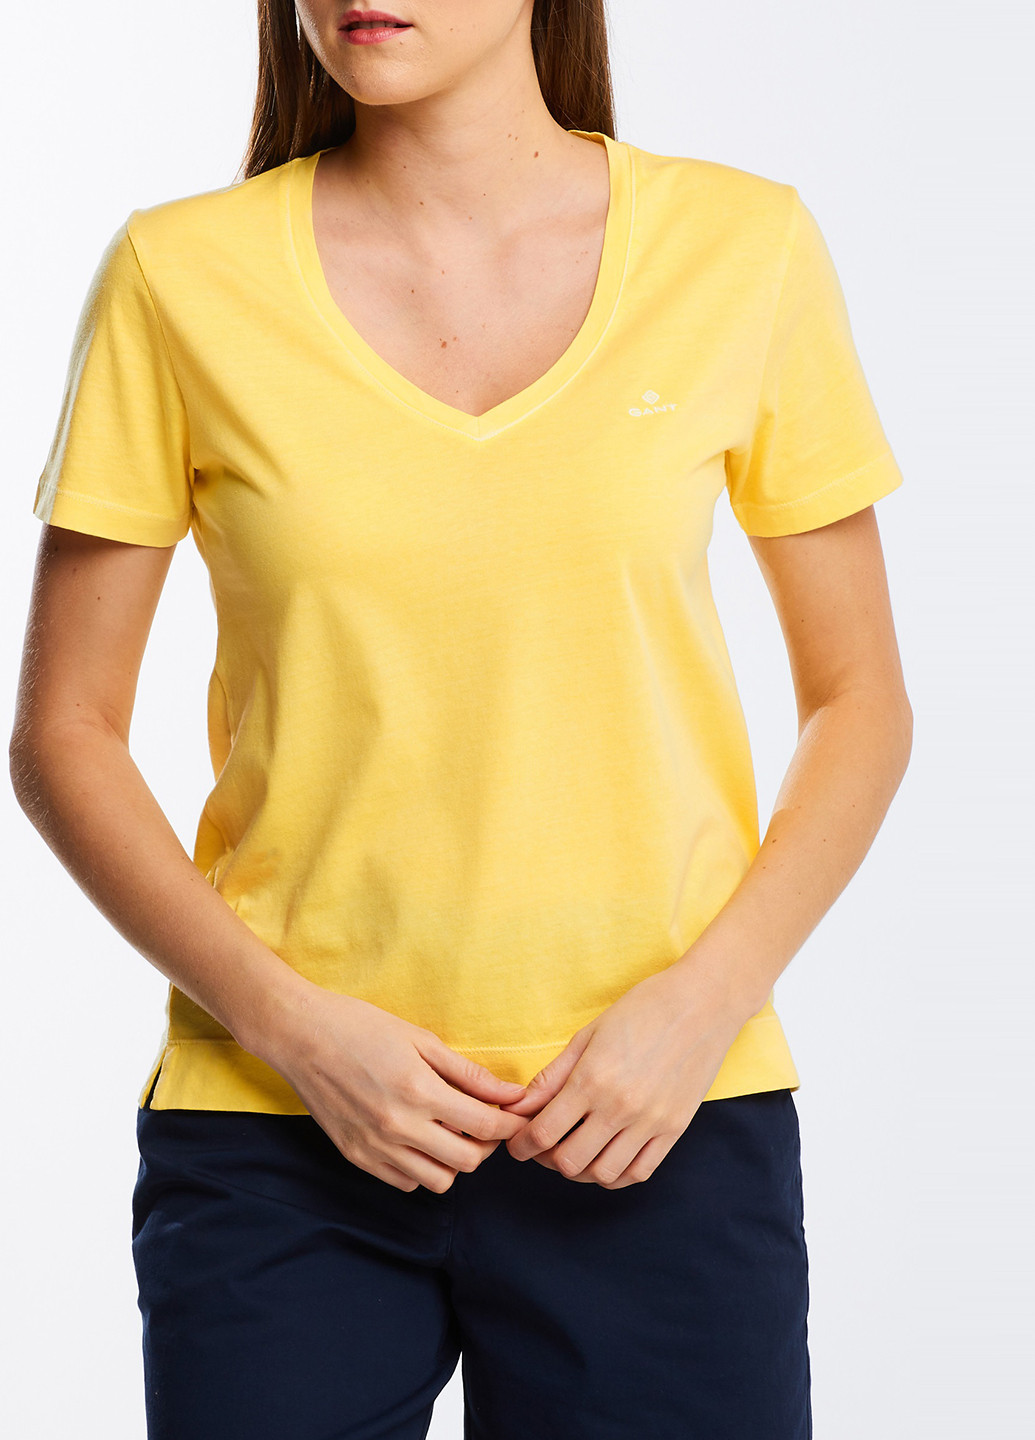 Жовта літня футболка Gant